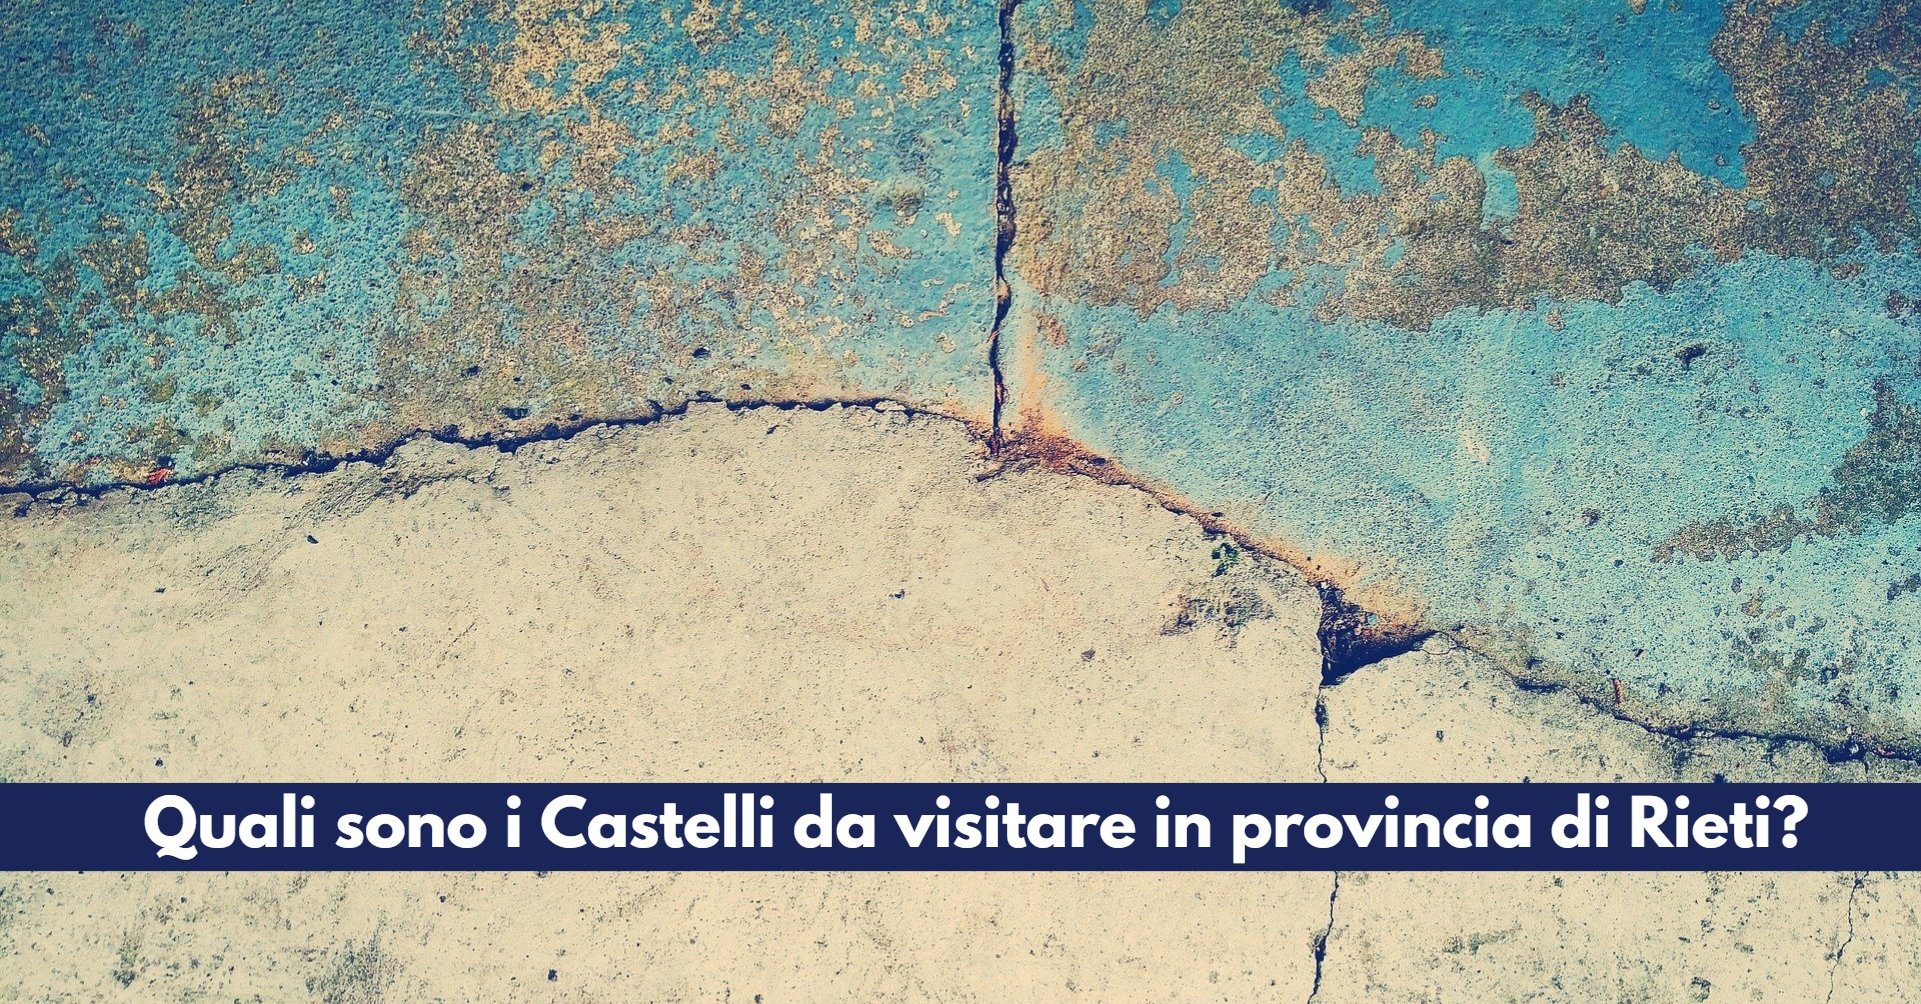 Quali sono i Castelli da visitare in provincia di Rieti? Ecco la lista completa